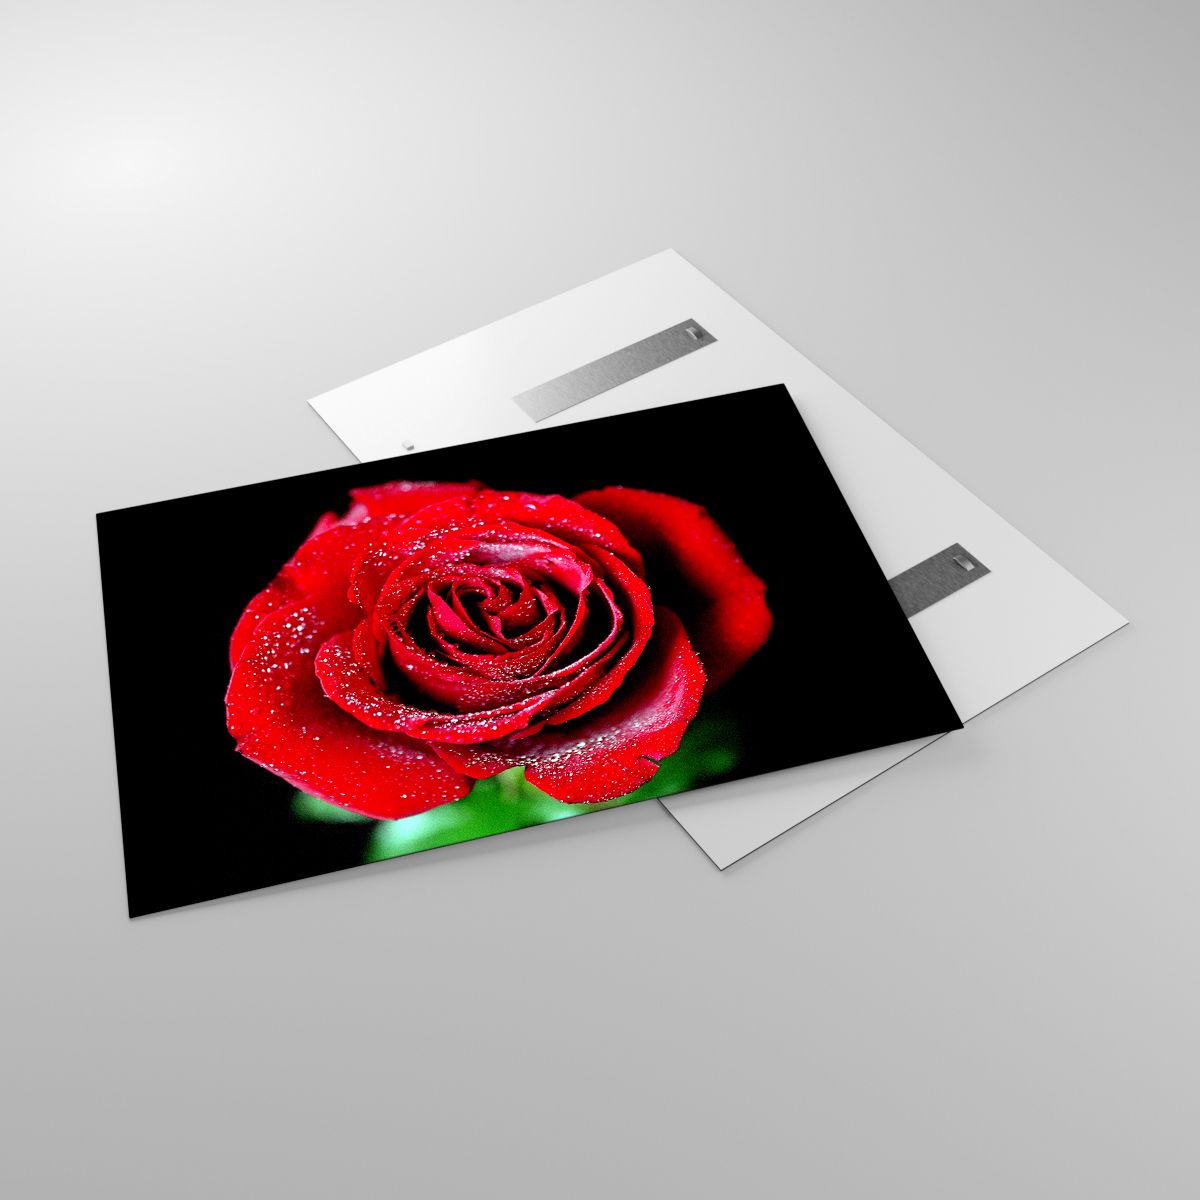 Glasbild Blumen, Glasbild Rote Rose, Glasbild Rosenblätter, Glasbild Liebe, Glasbild Wassertropfen